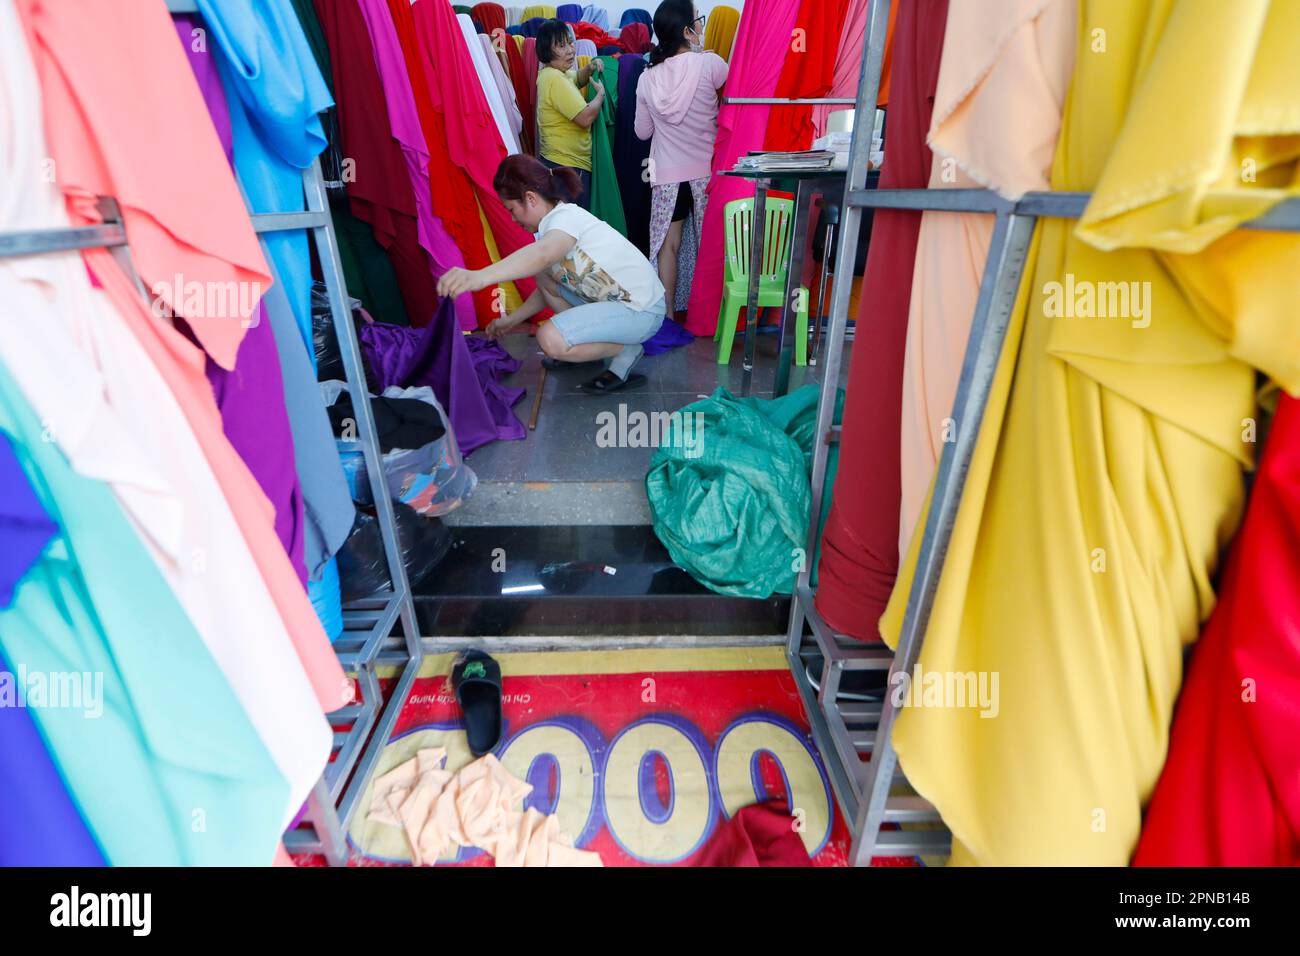 Quartier chinois de Cholon. Divers rouleaux de textile à vendre en magasin. Ho Chi Minh ville. Vietnam. Banque D'Images